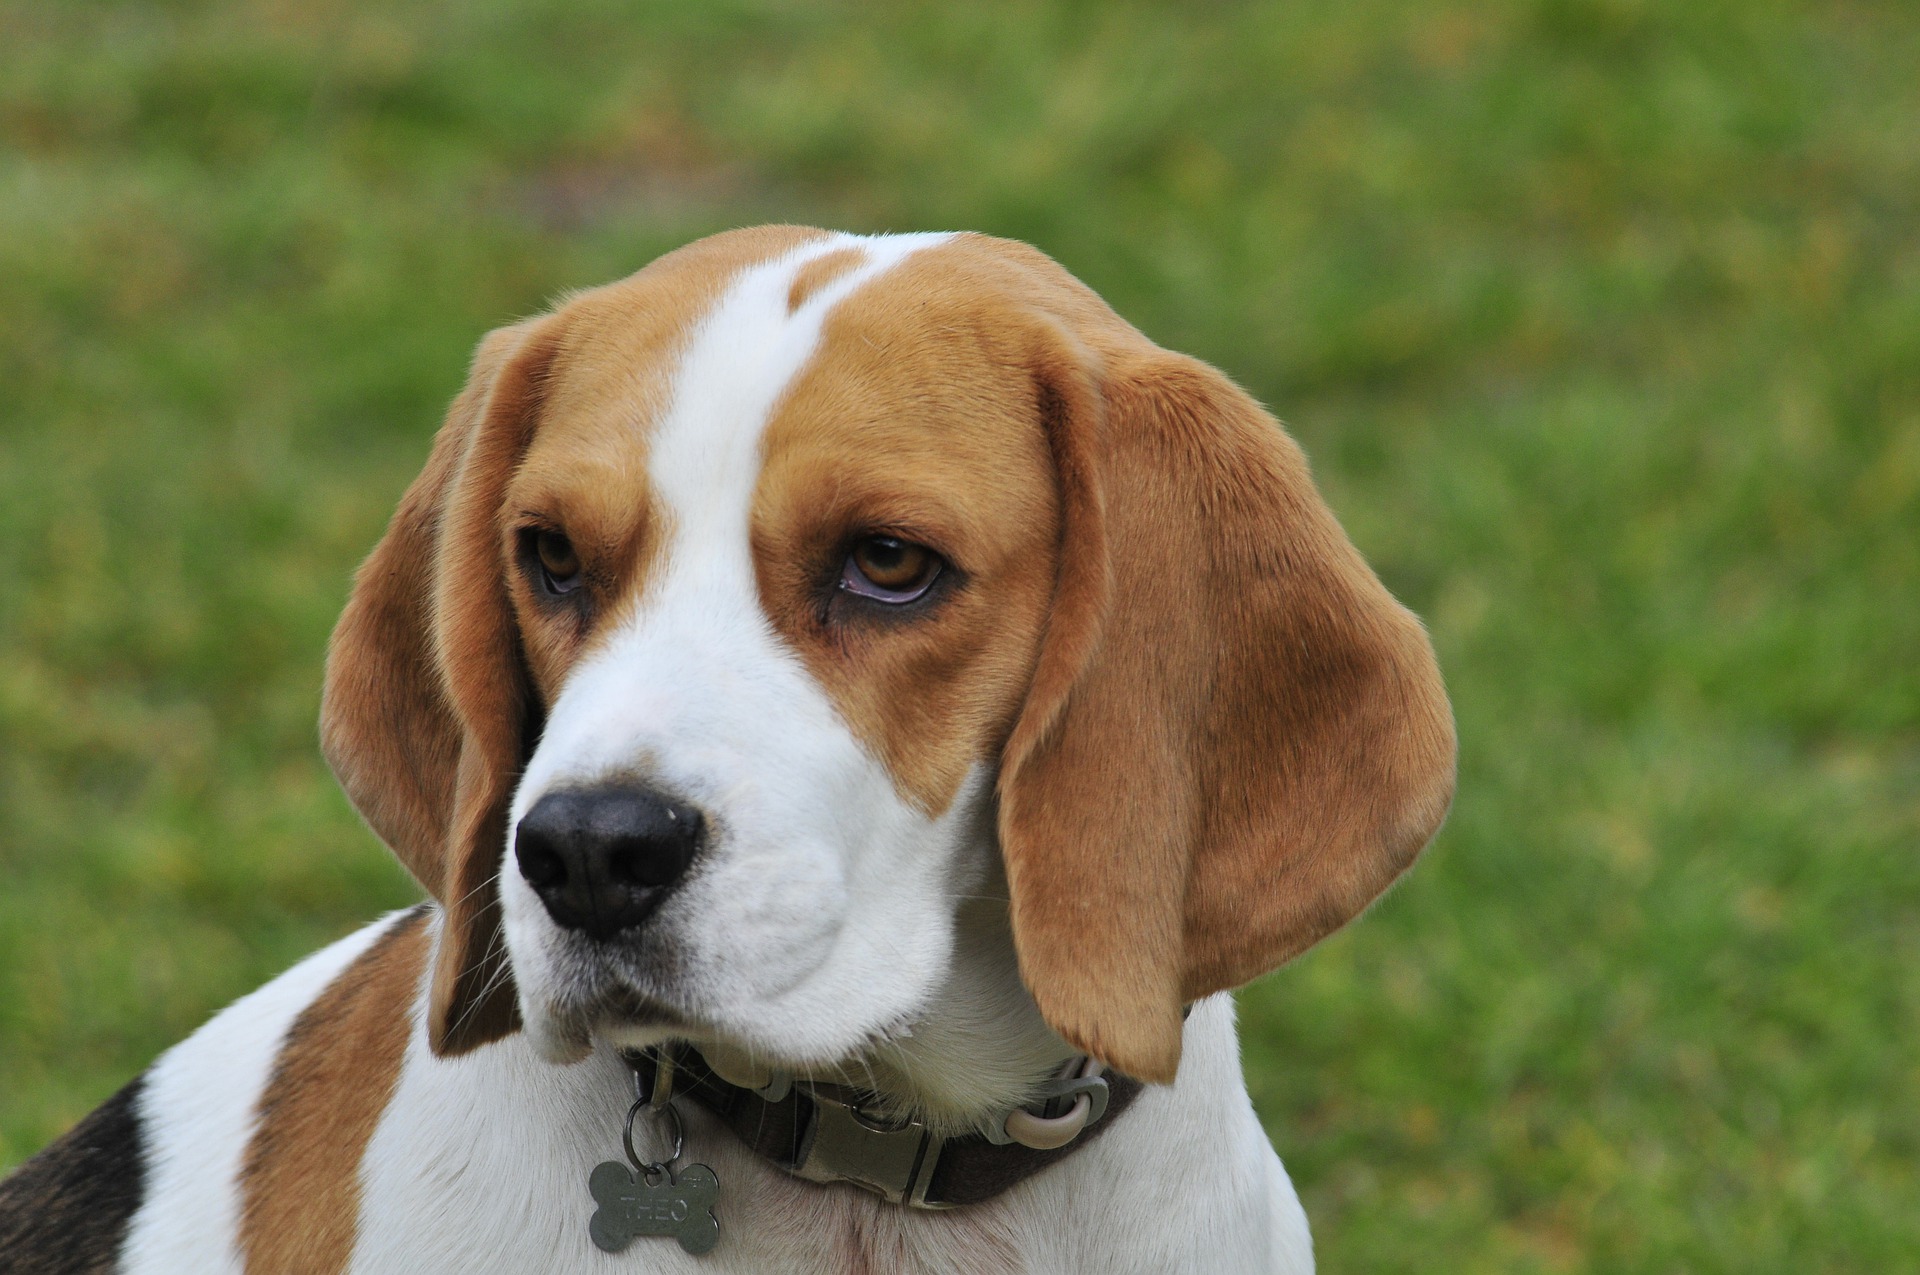 Beagle Mix: The Perfectly Balanced Designer Dog